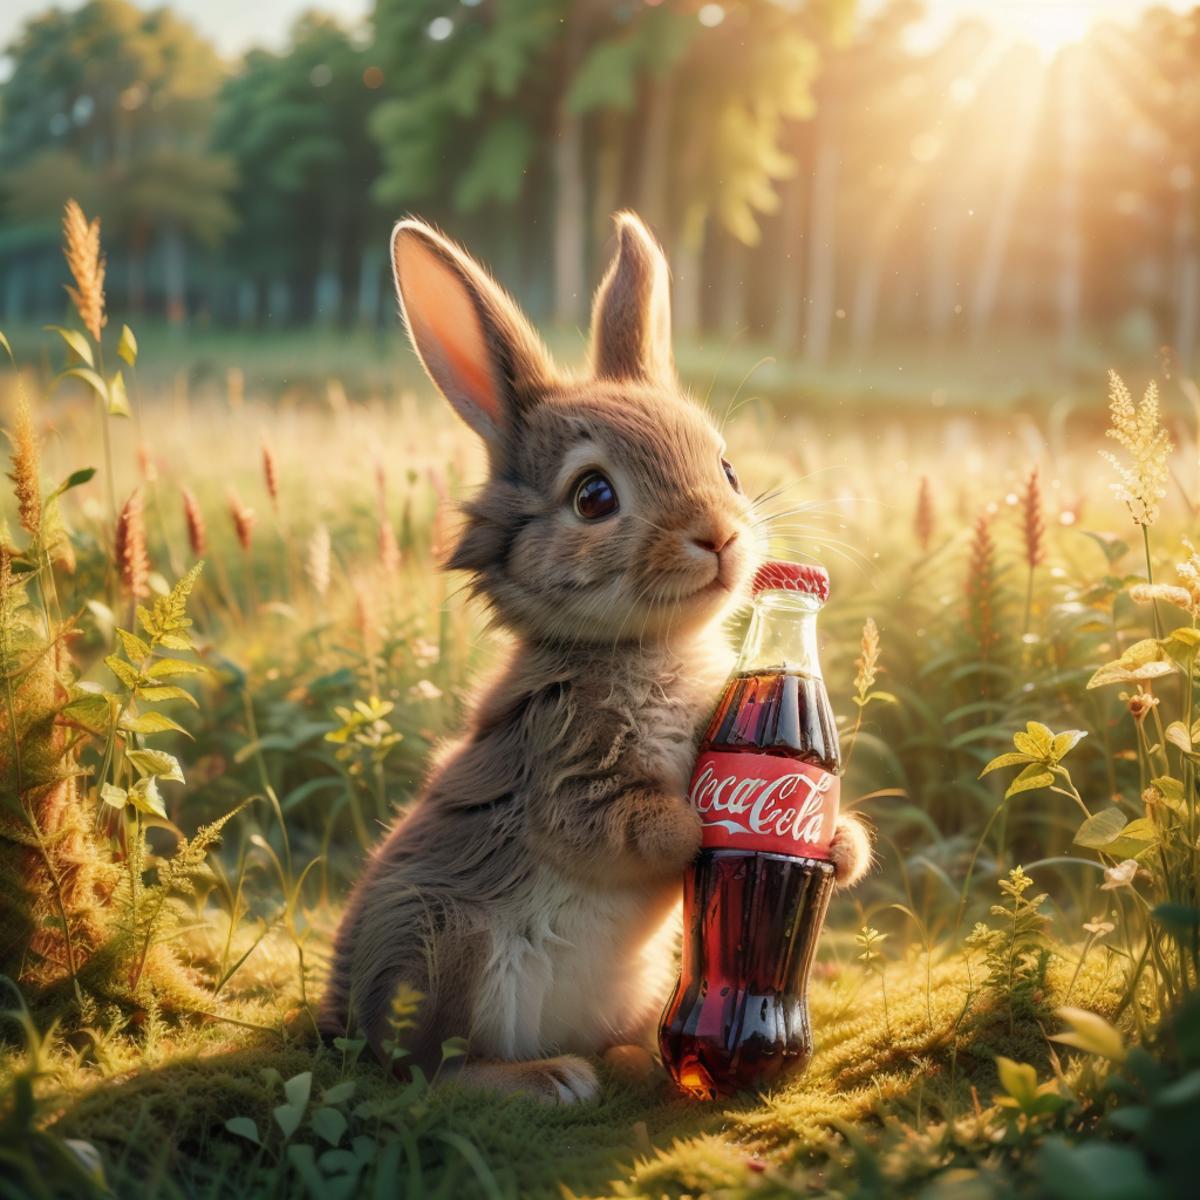 NORFLEET Coke commercials image by norfleetzzc